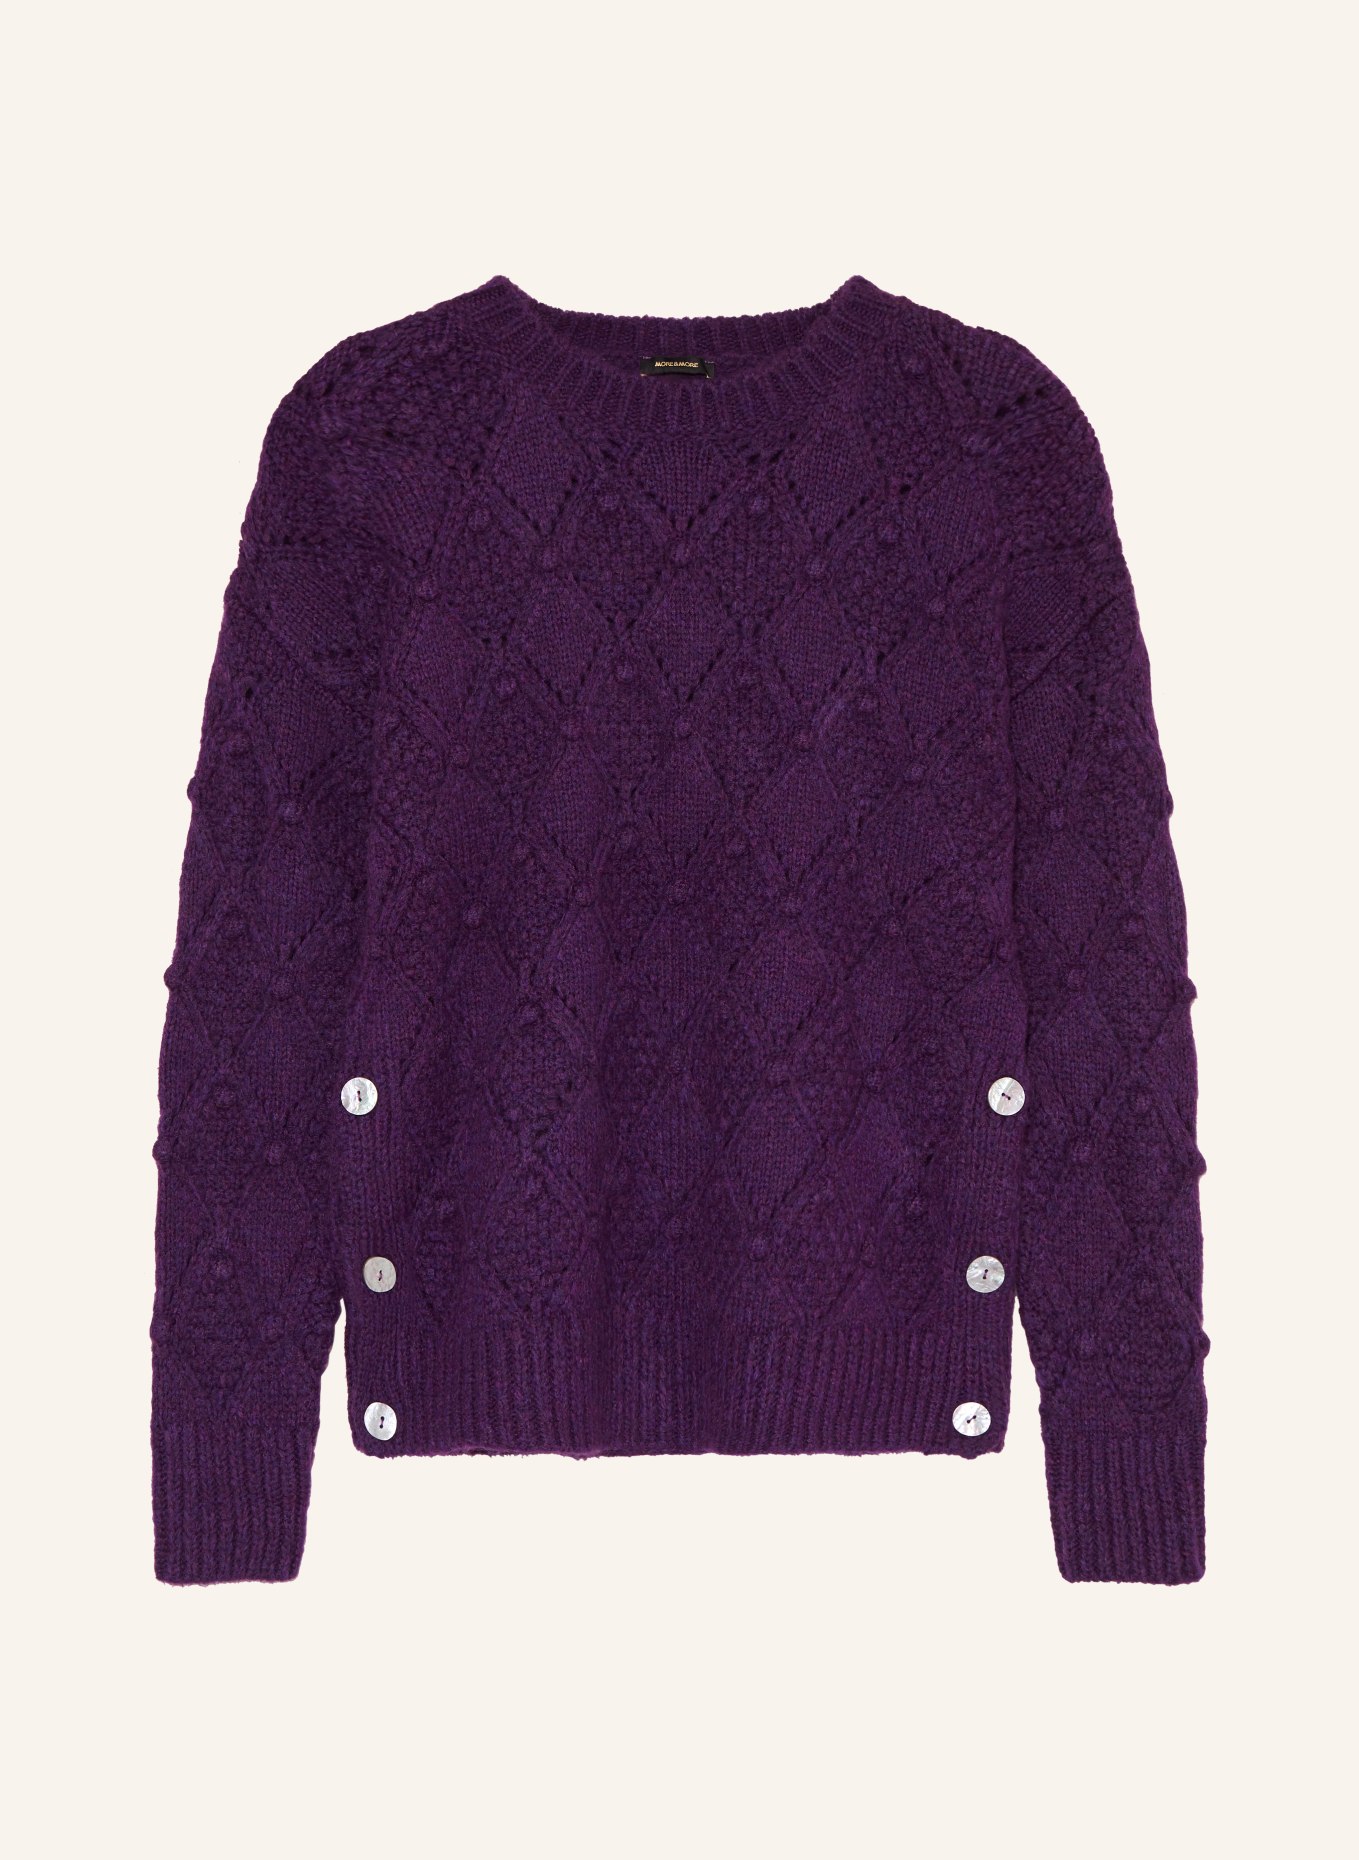 MORE & MORE Sweater, Color: DARK PURPLE (Image 1)